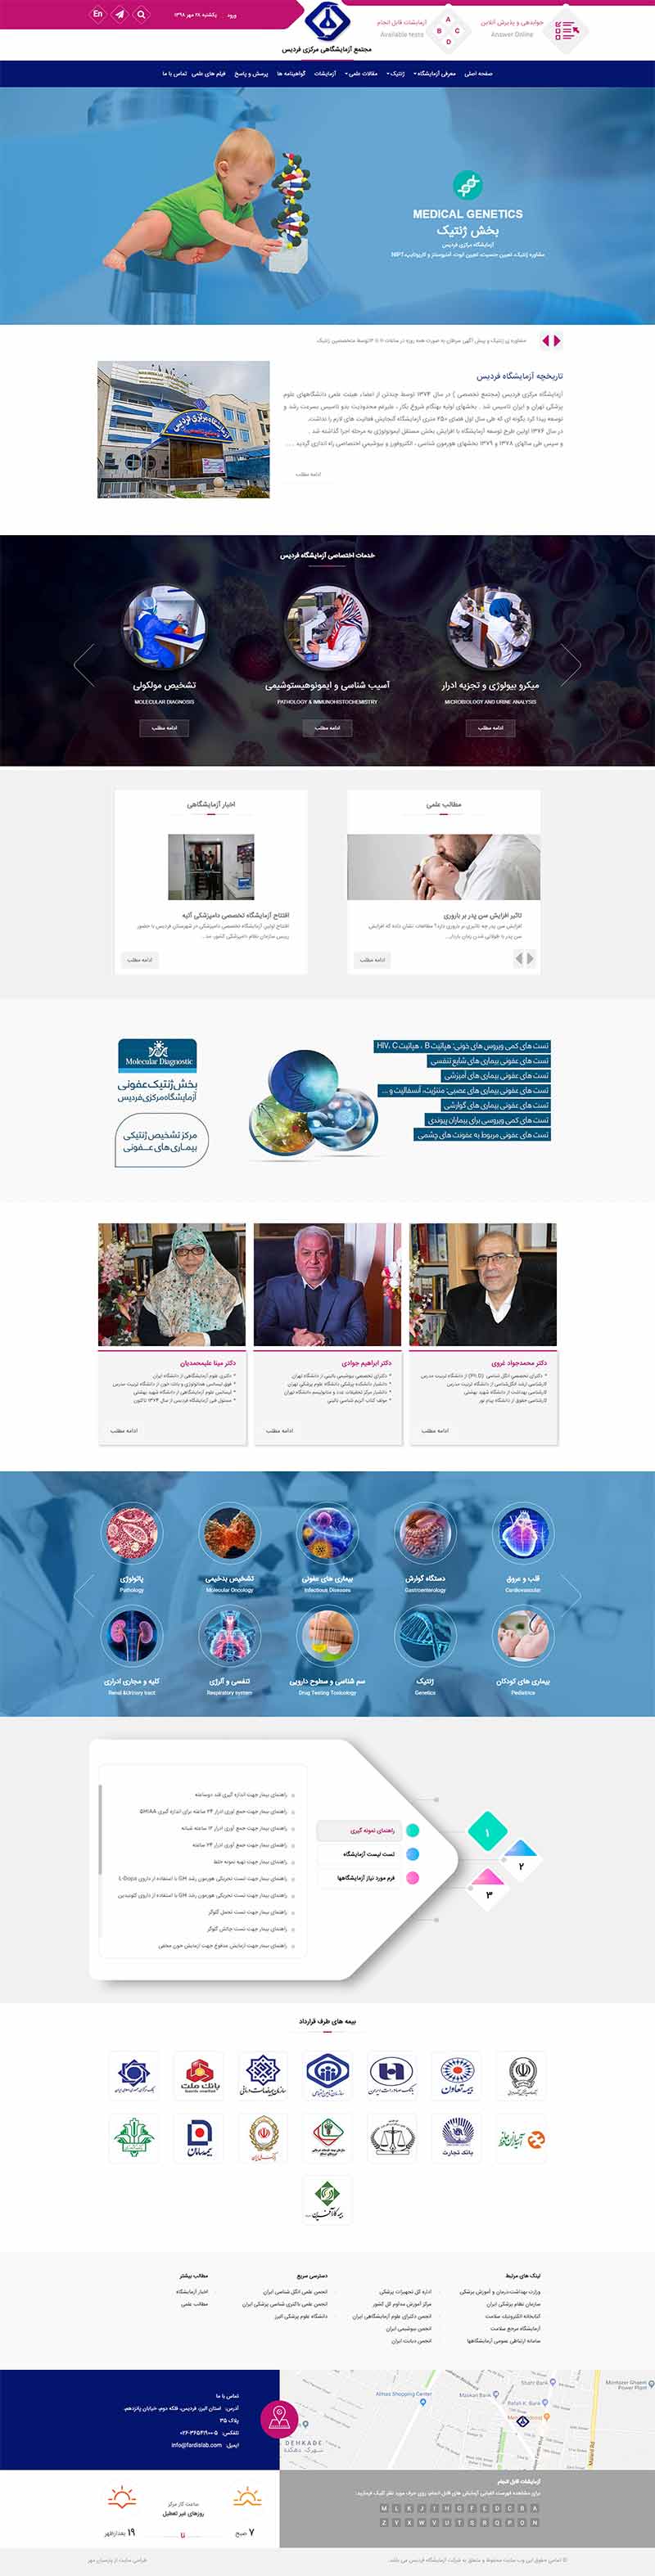 fardis lab website